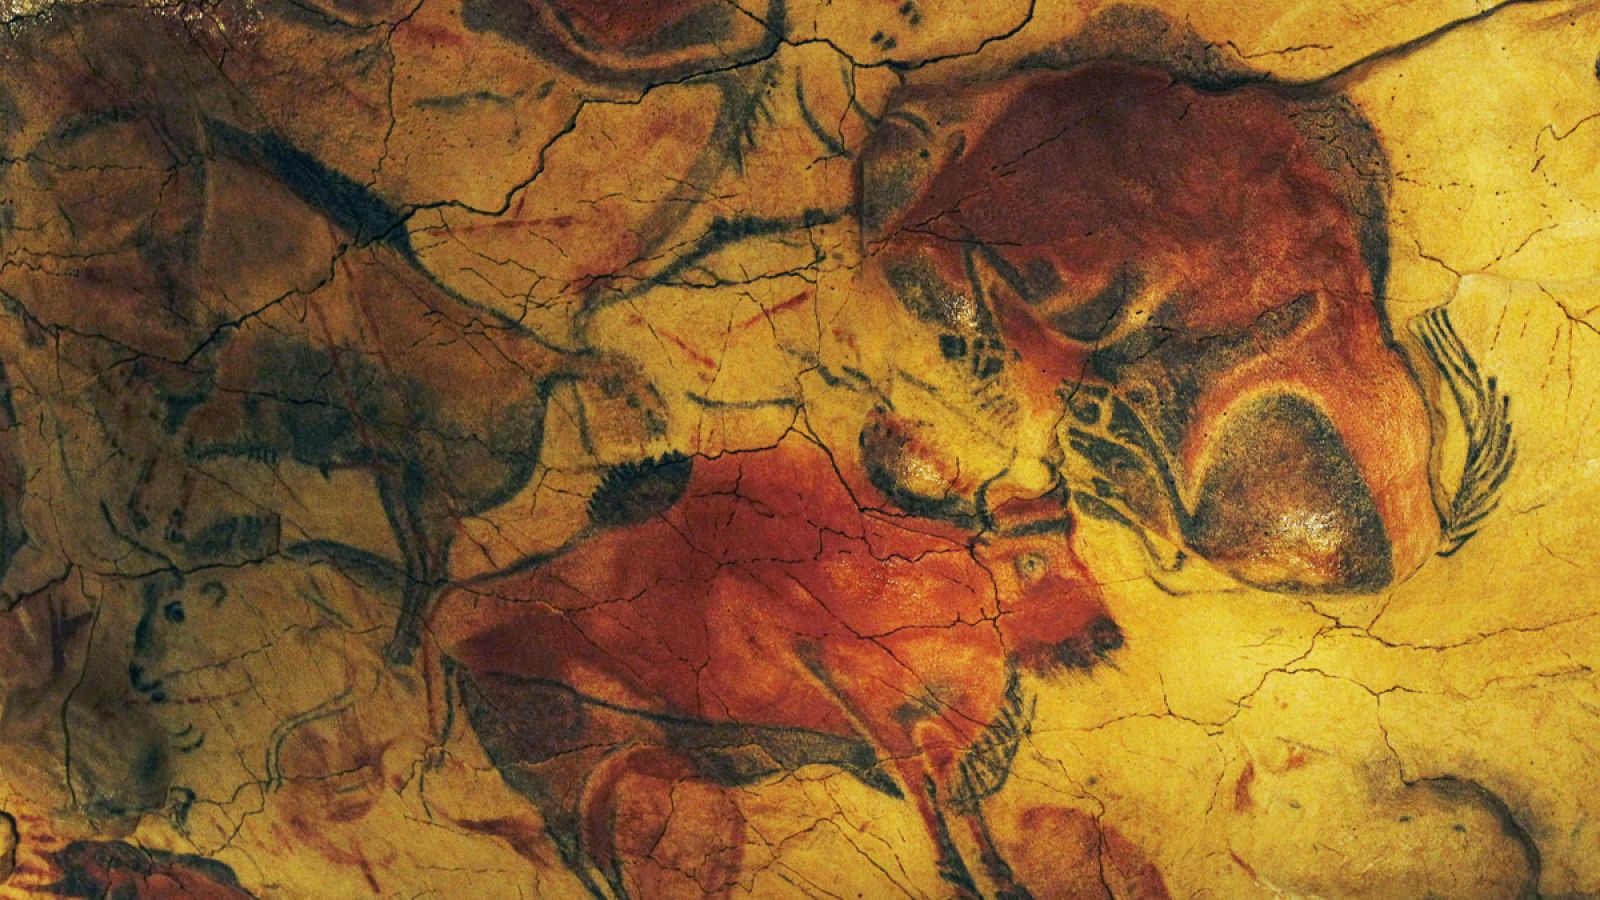 El ocre se empleó como pigmento para la realización de las pinturas rojas en la cueva de Altamira.